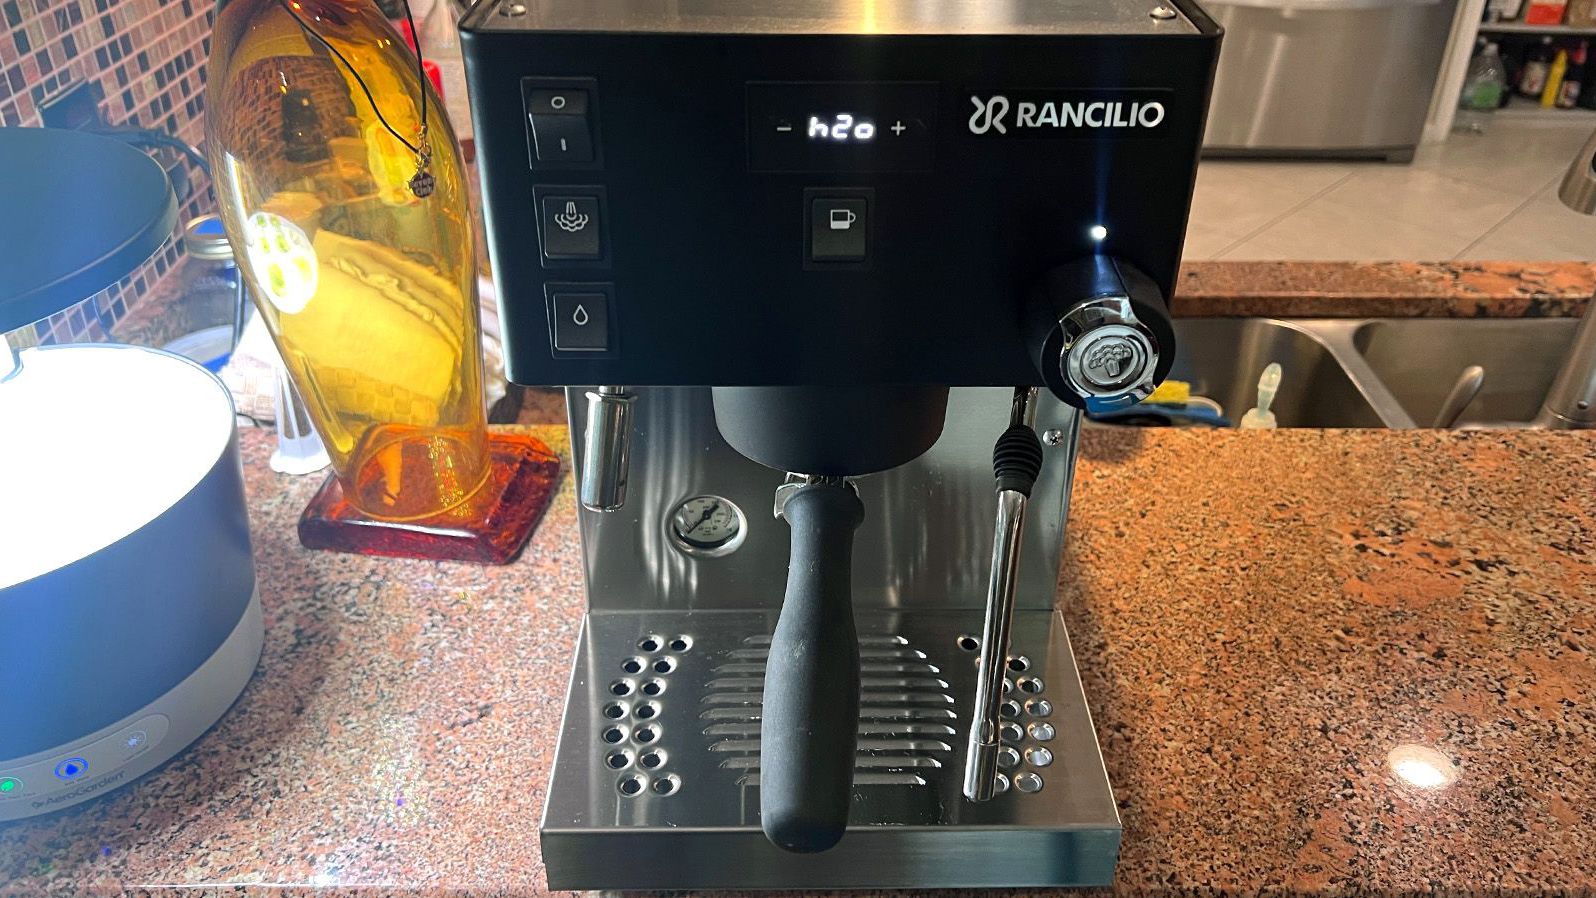 DeLonghi Stilosa Advanced Espresso & Coffee Machine with 15 Bar Pressure  1100 Watt 1 Litre Black